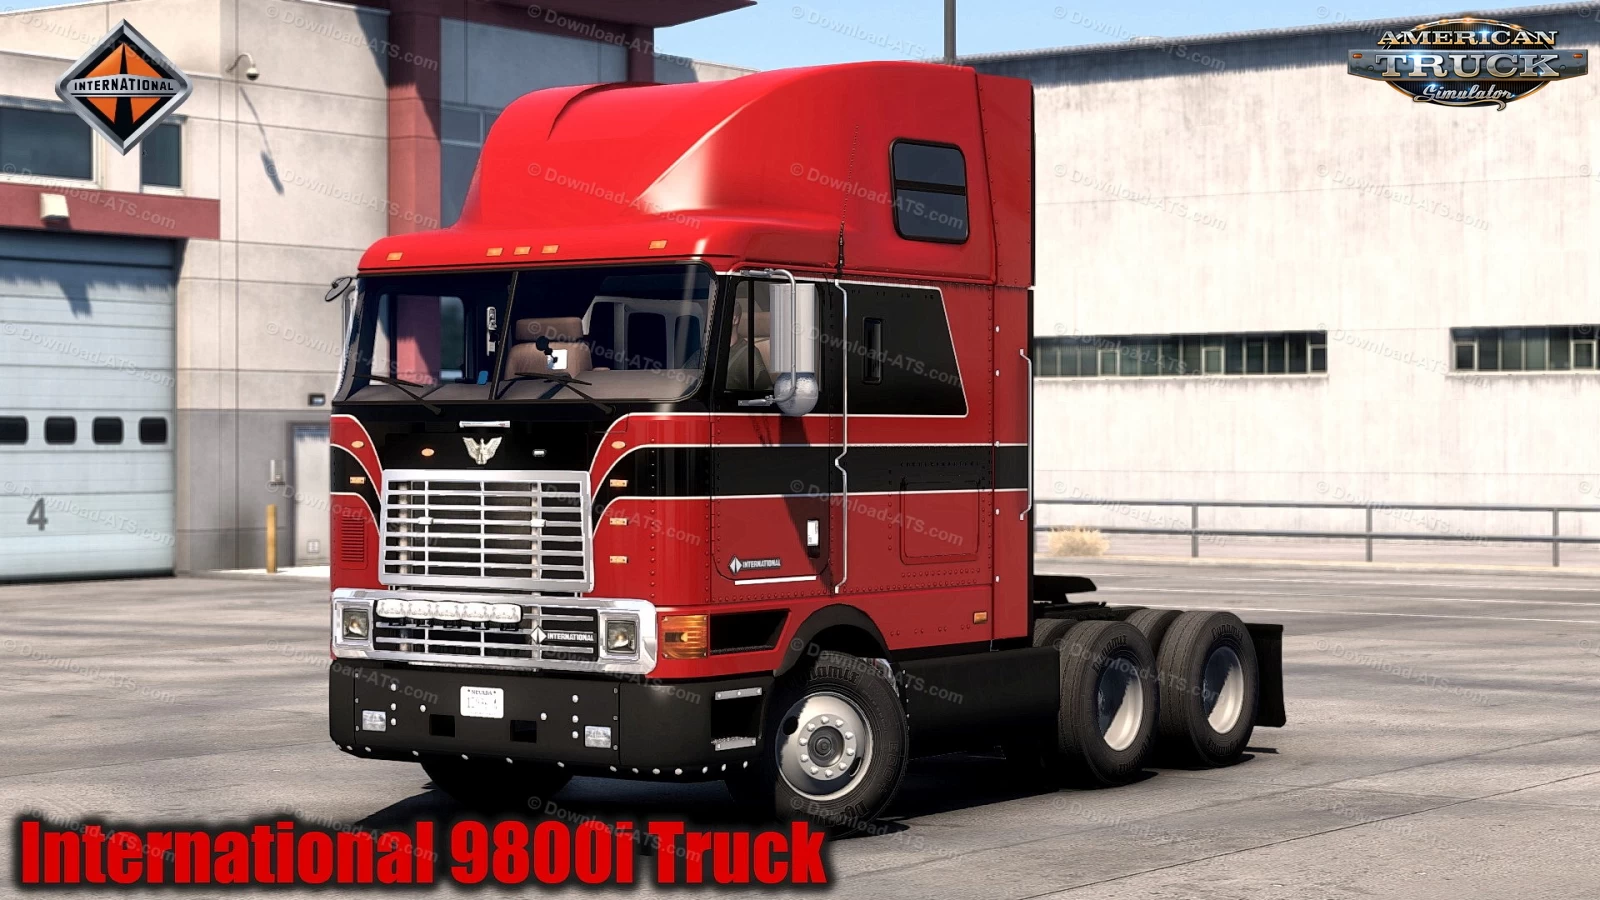 International 9800i Truck + Interior v1.3.1 (1.48.x) for ATS